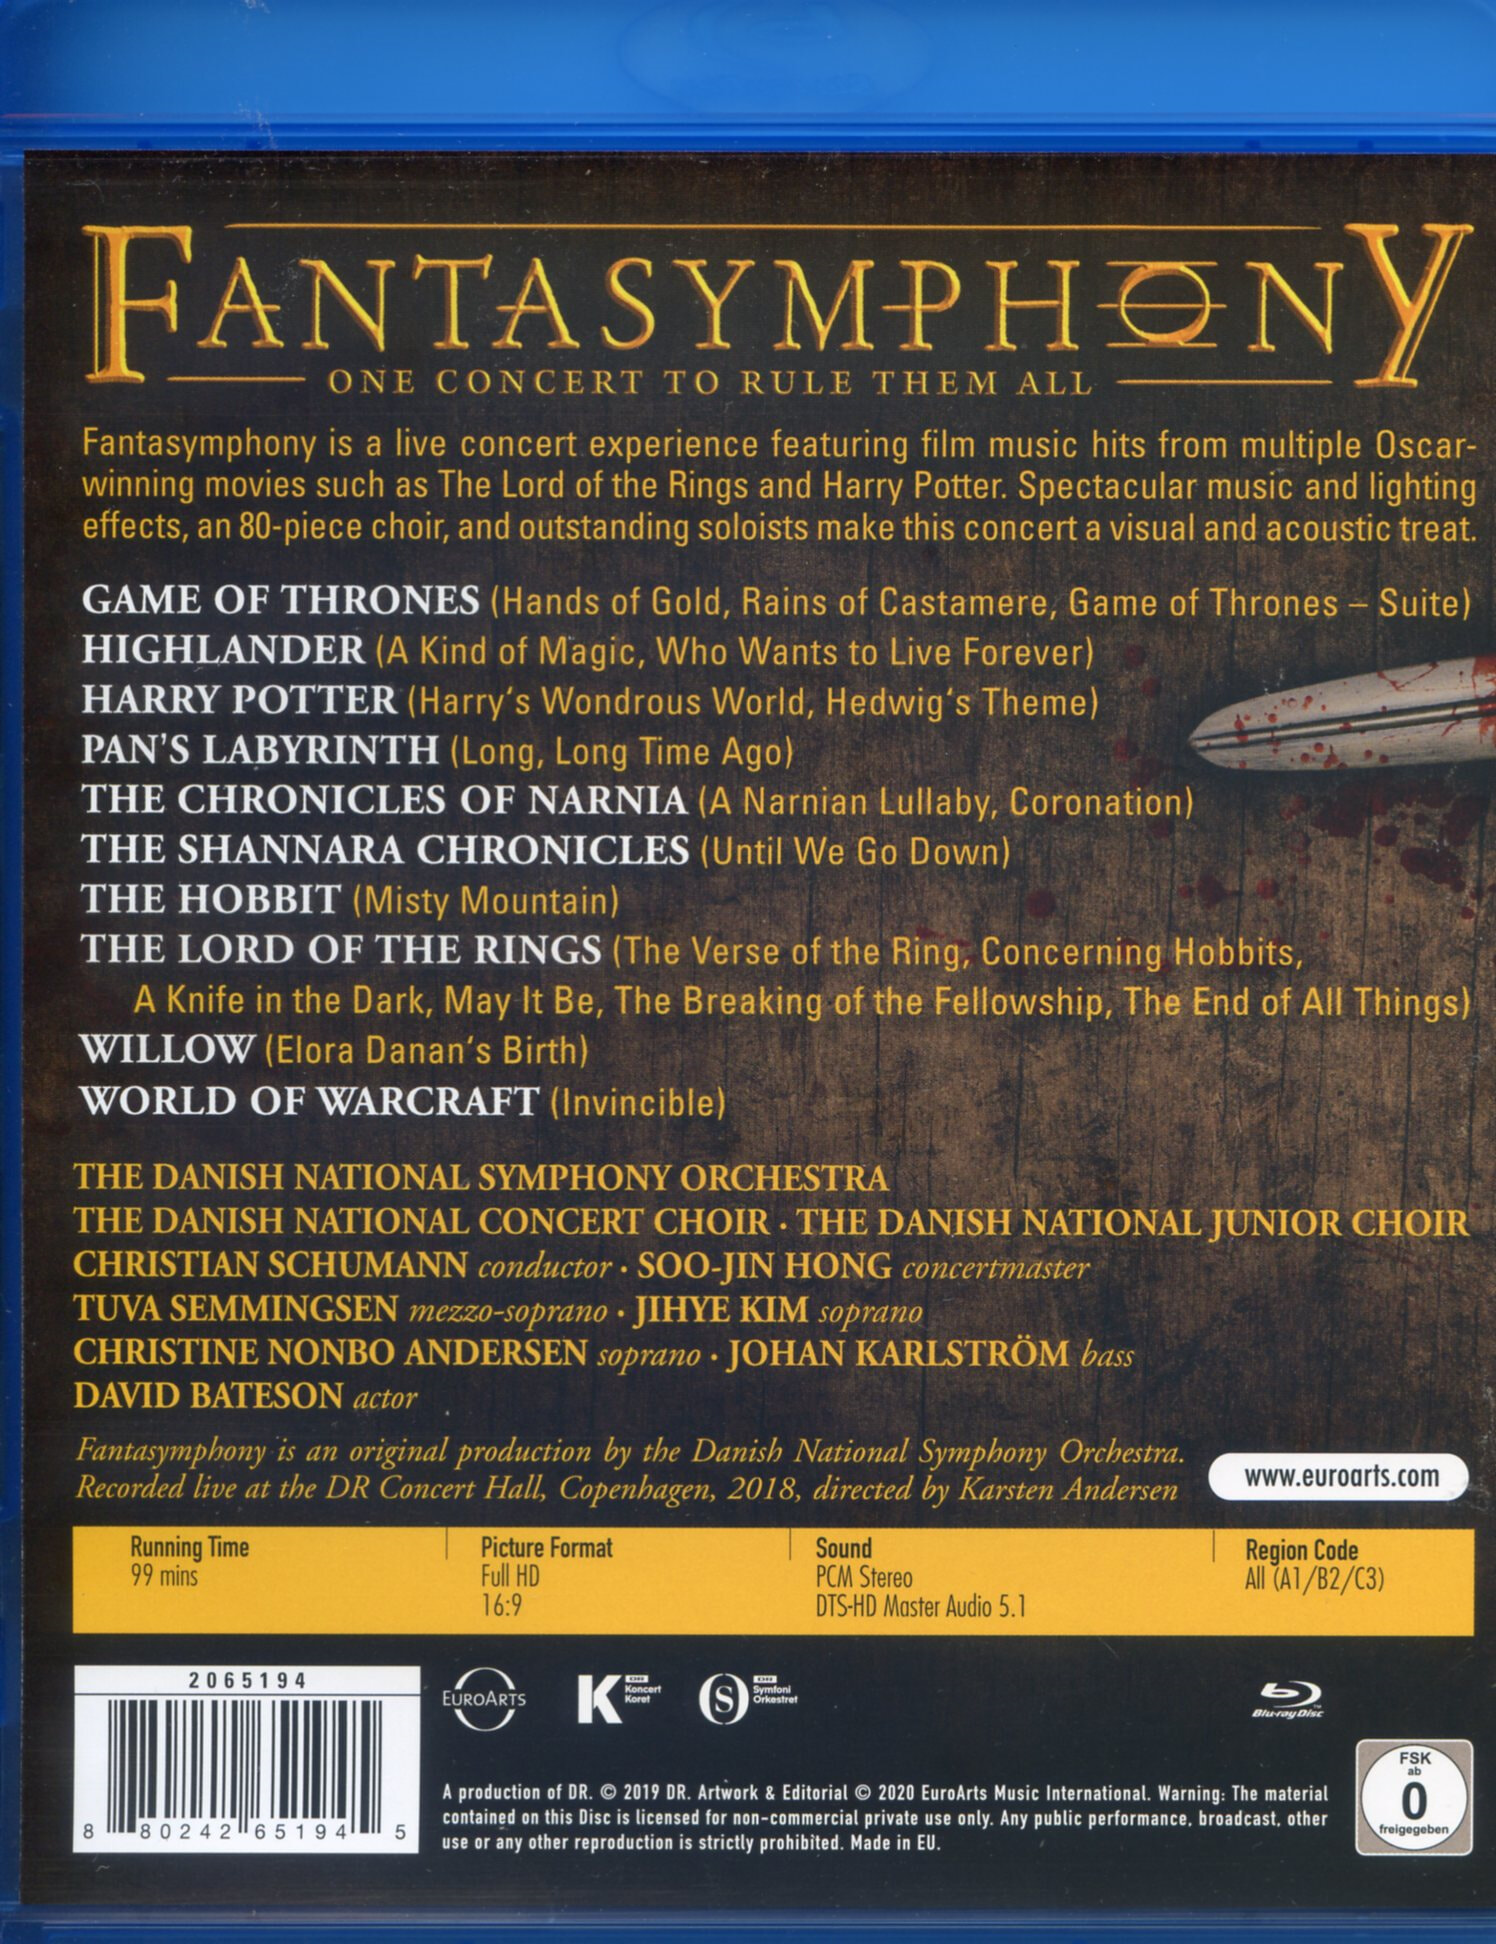 덴마크 국립 교향악단 - 영화 음악 콘서트 (Fantasymphony) [블루레이]